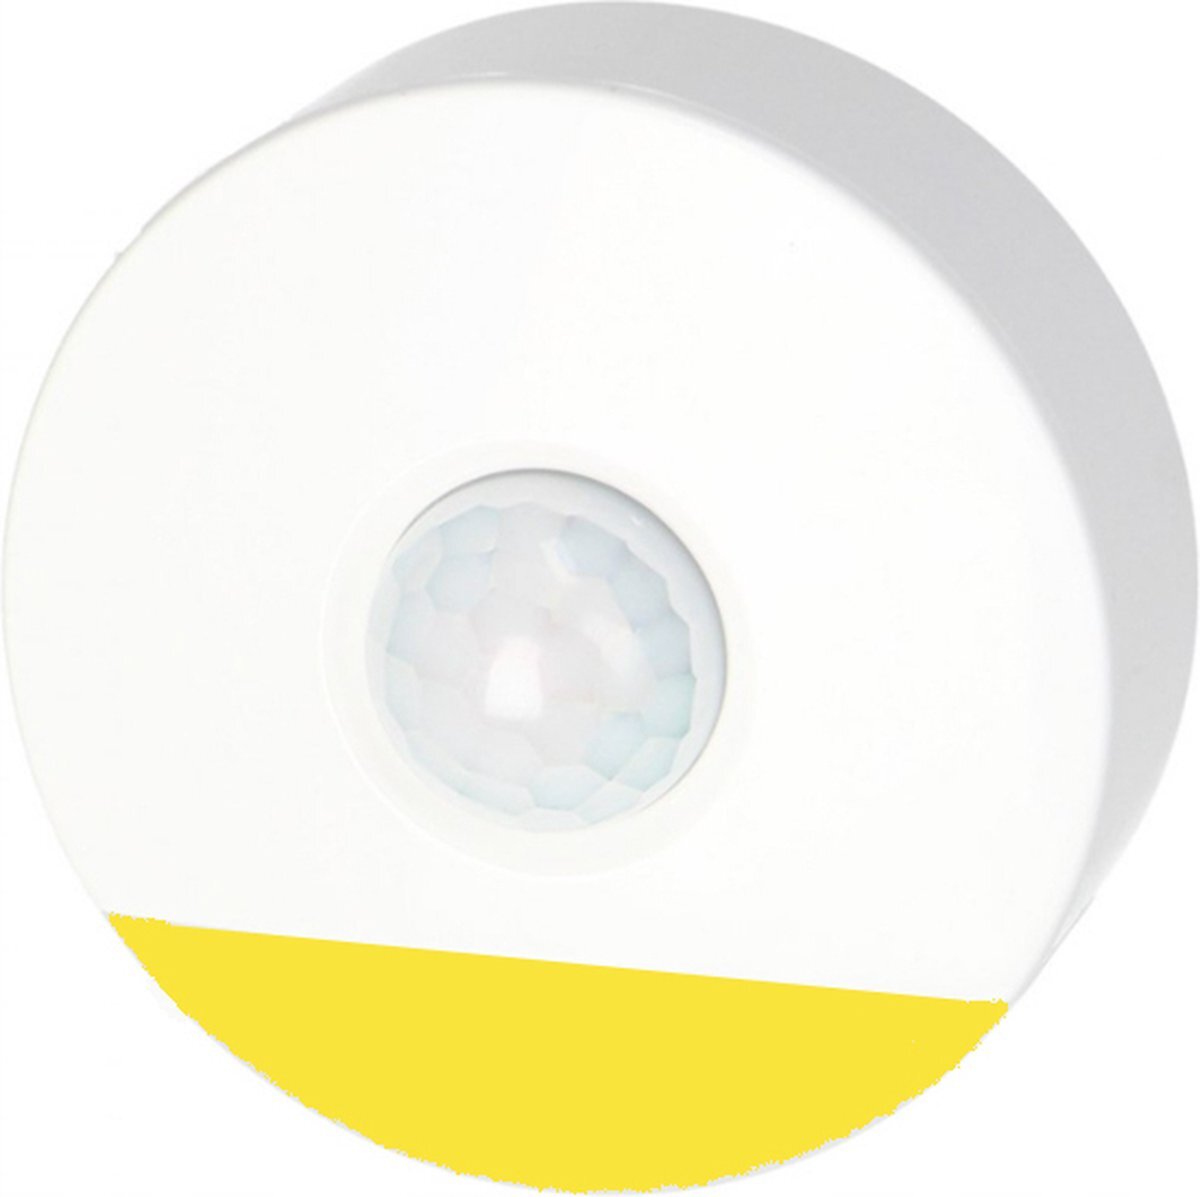 virone Virone® - Plugin nachtlampje met bewegingssensor - Warm licht - LED stopcontact lampje - Nachtlampje voor kinderen en Volwassenen